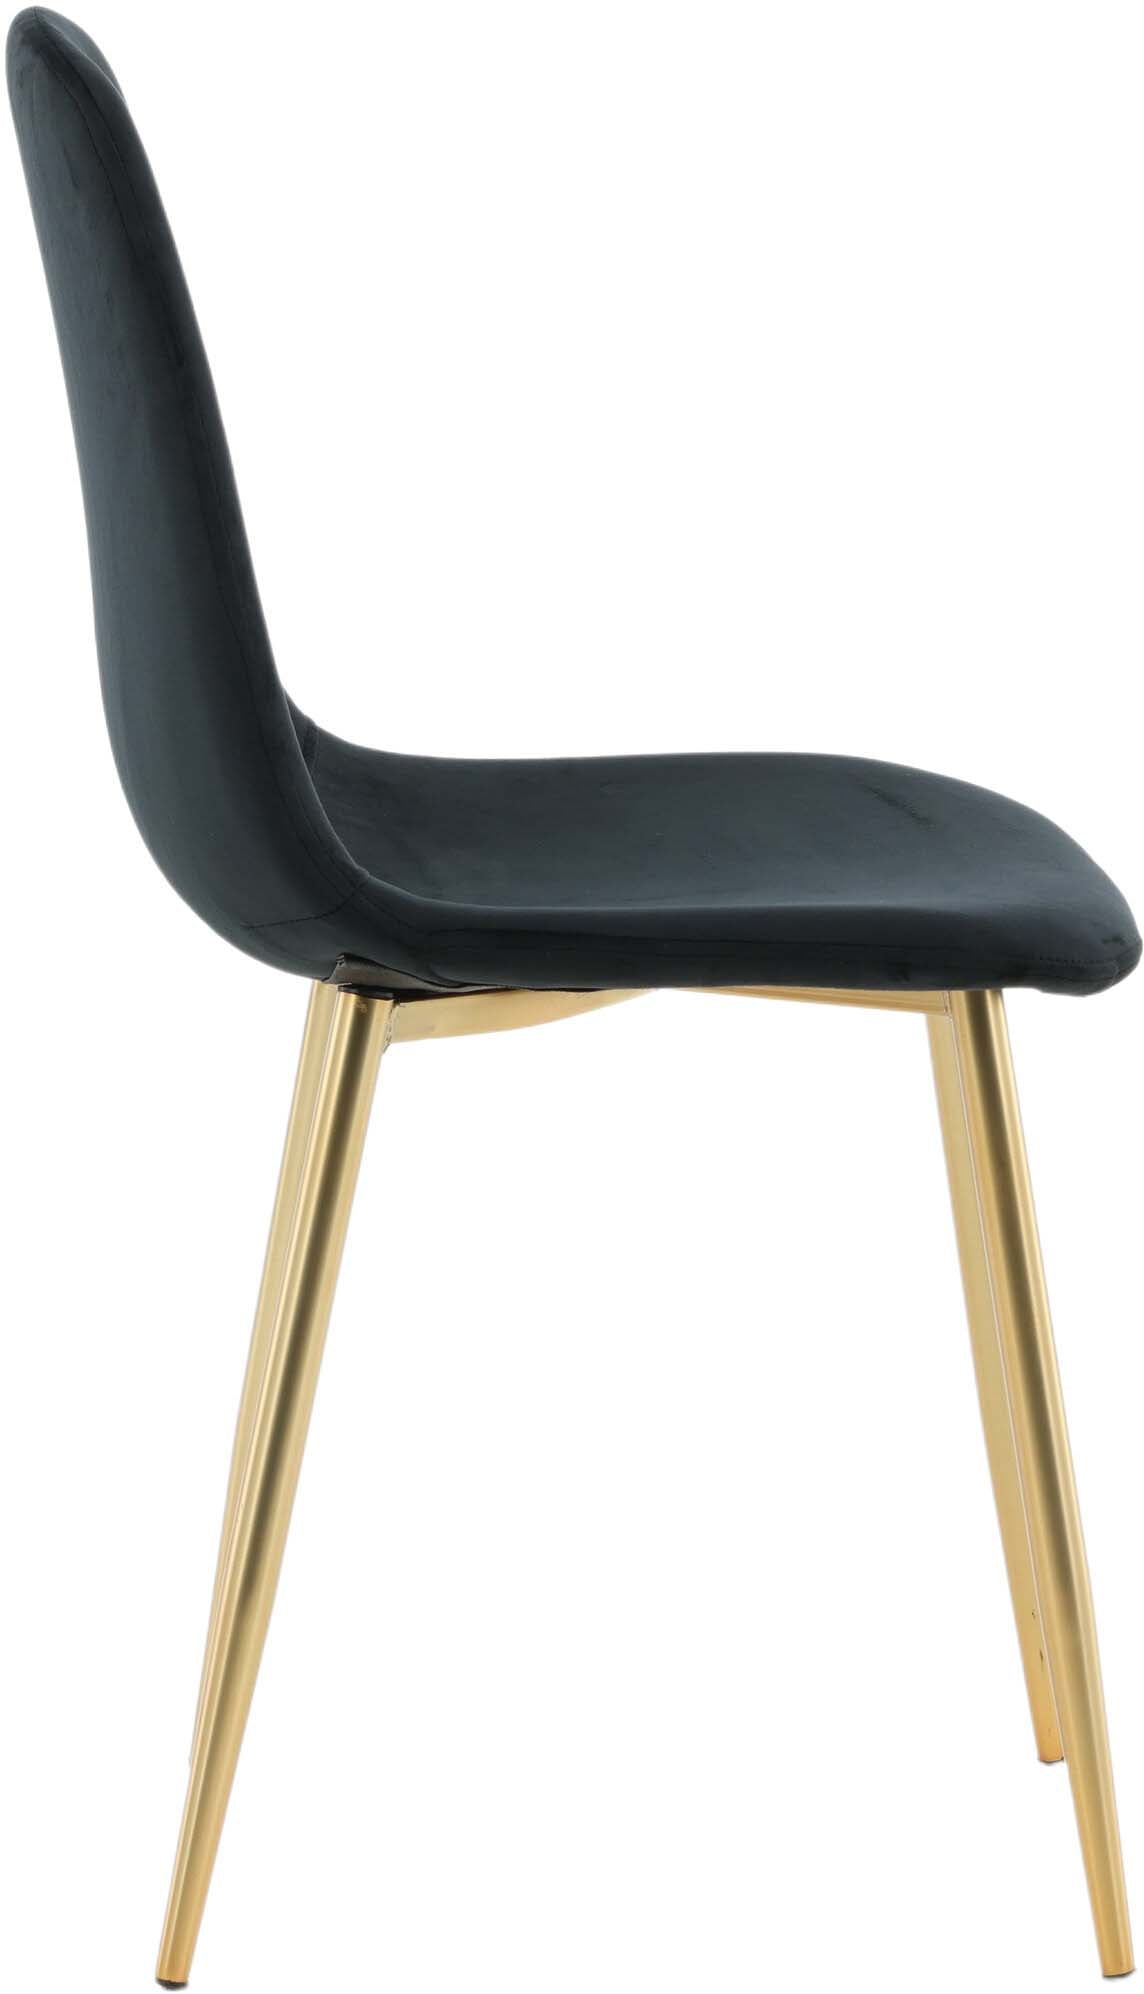 Polar Stuhl in Schwarz präsentiert im Onlineshop von KAQTU Design AG. Stuhl ist von Venture Home